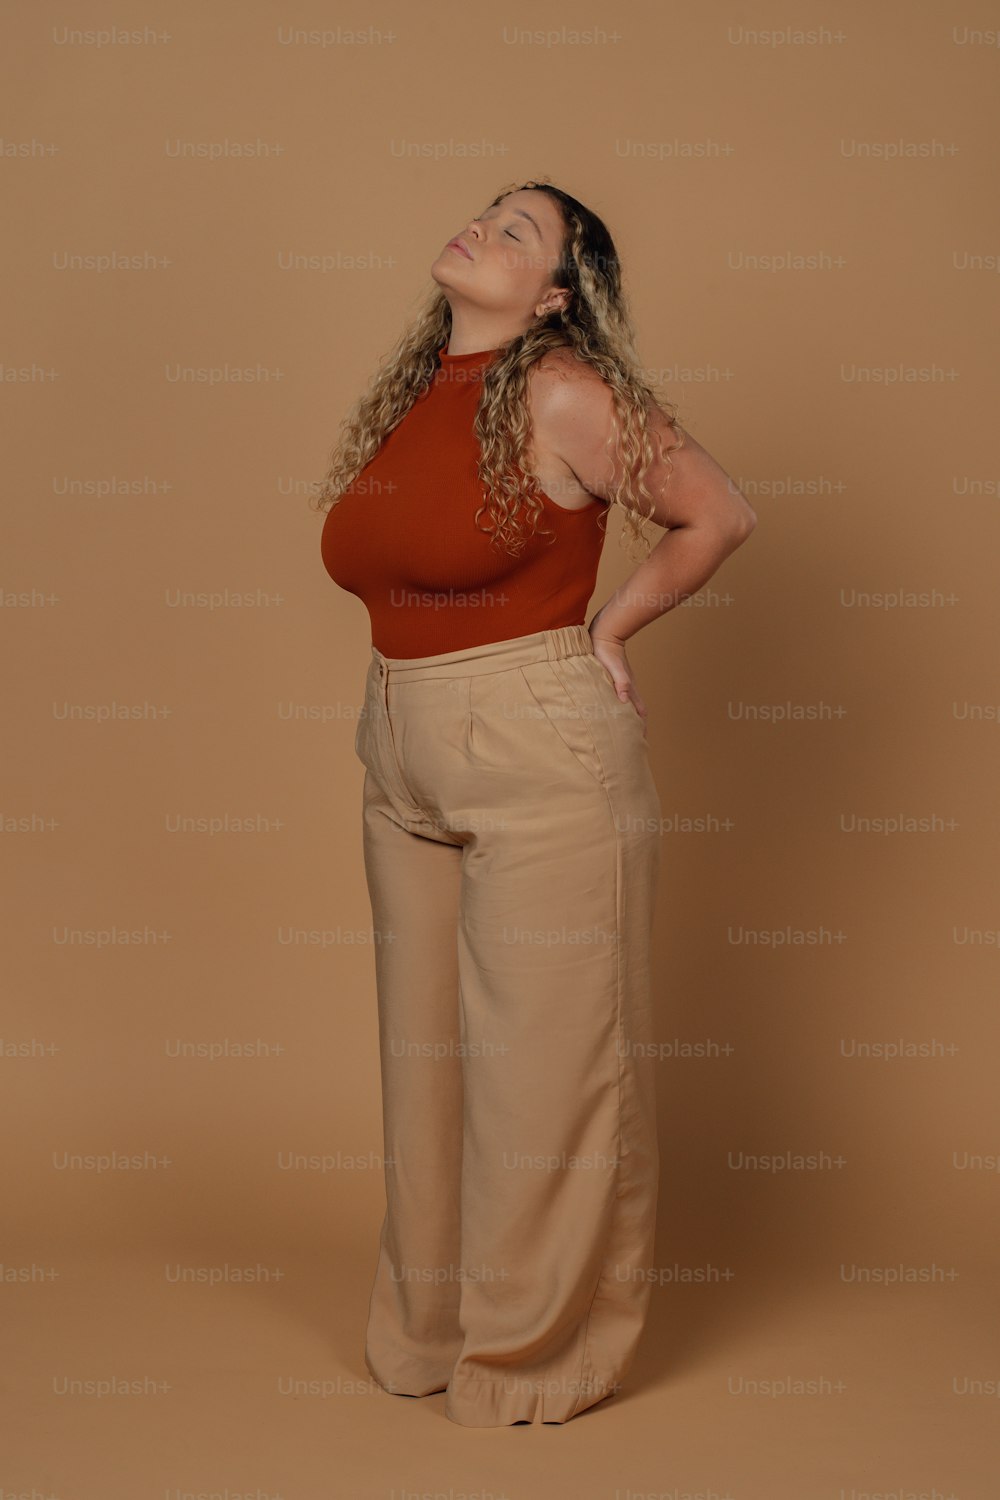 Una mujer con un top rojo y pantalones color canela